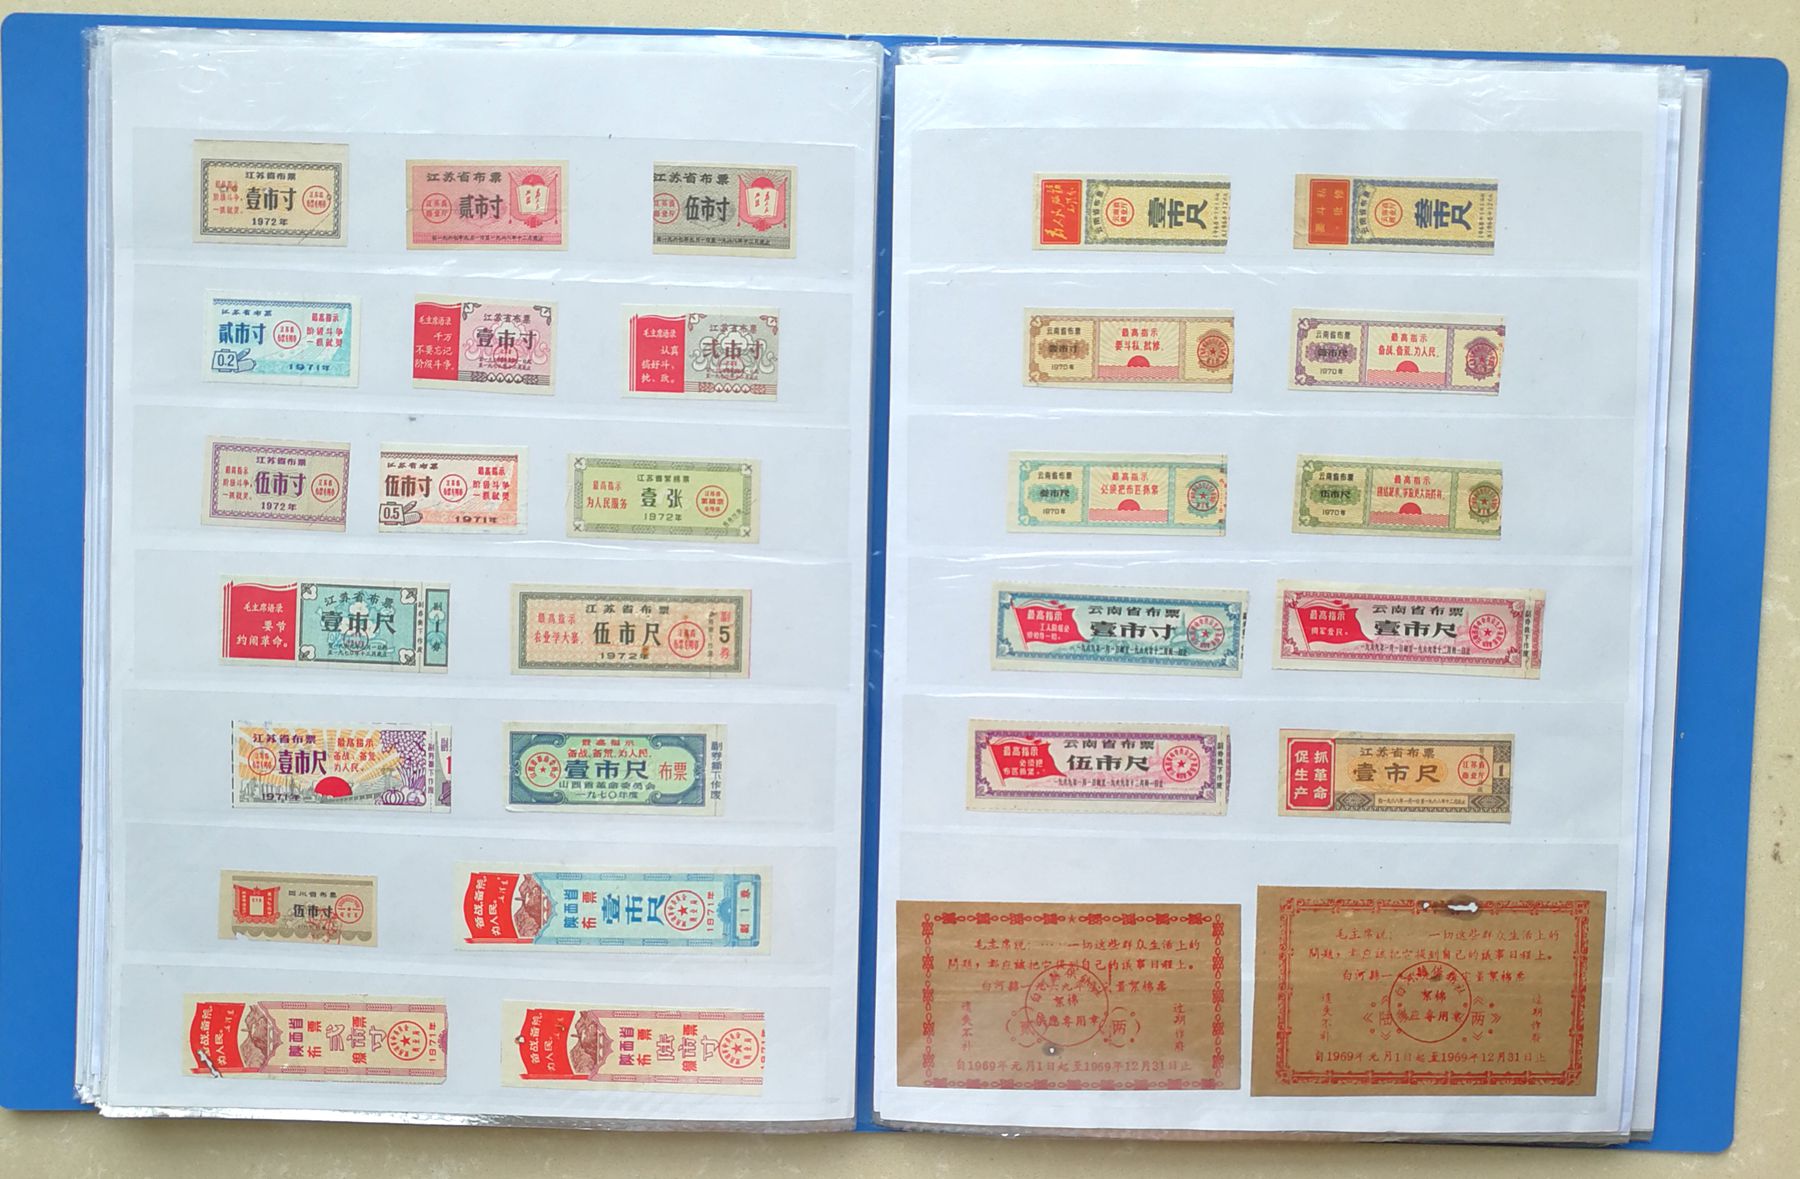 H2001, Album of 1200 pcs Ration Coupons, China 1960-1992 - Click Image to Close